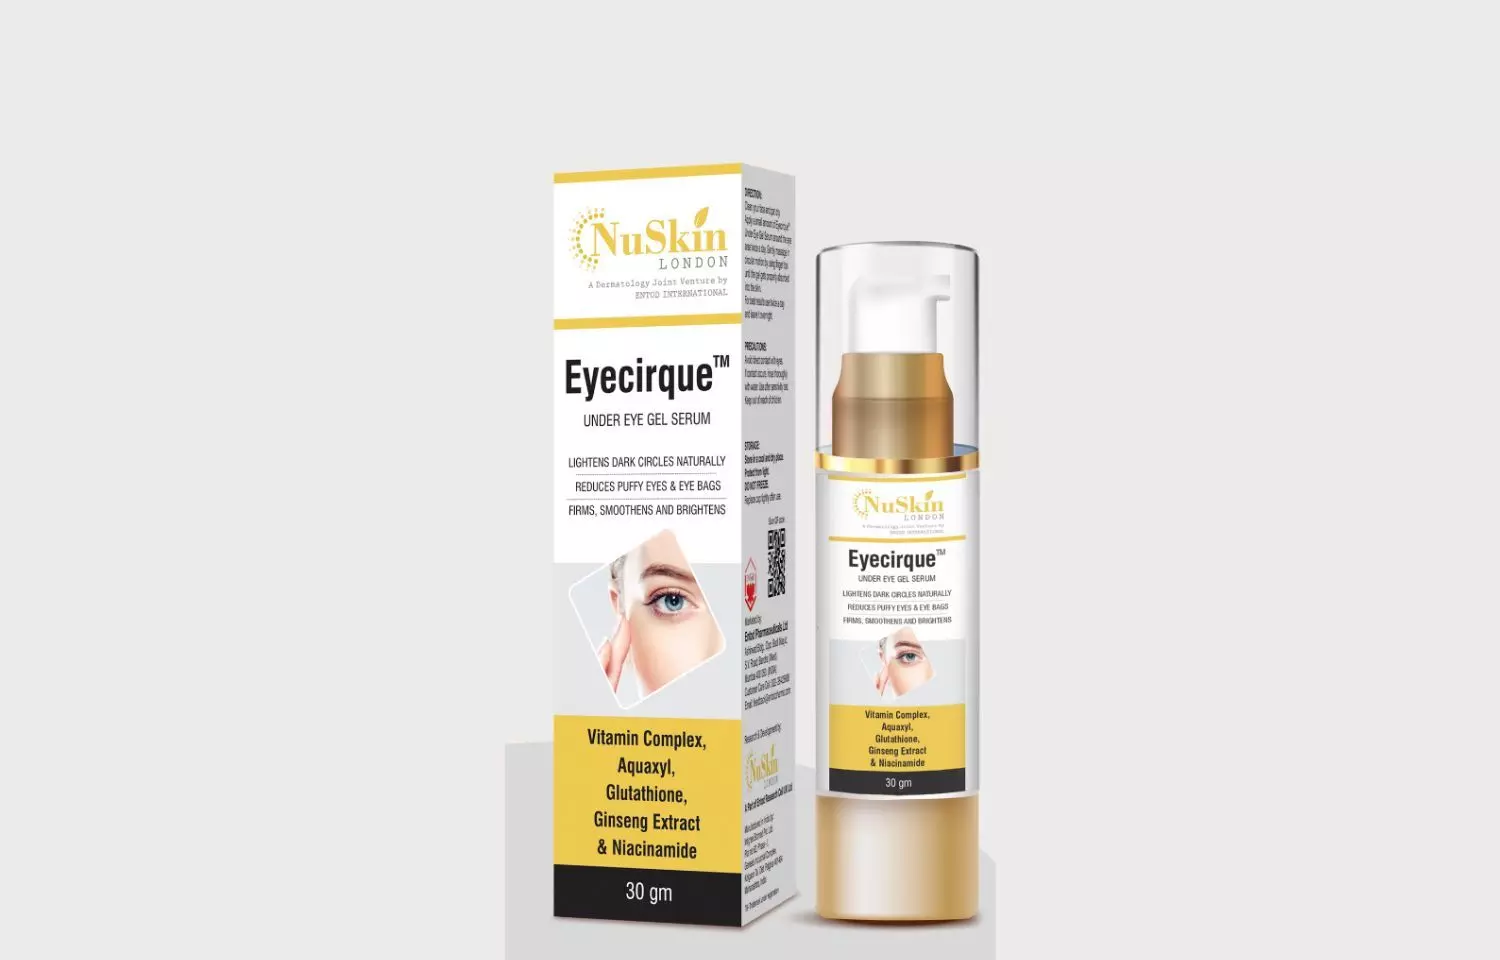 ENTOD Pharma launches under eye gel serum Eyecirque in India